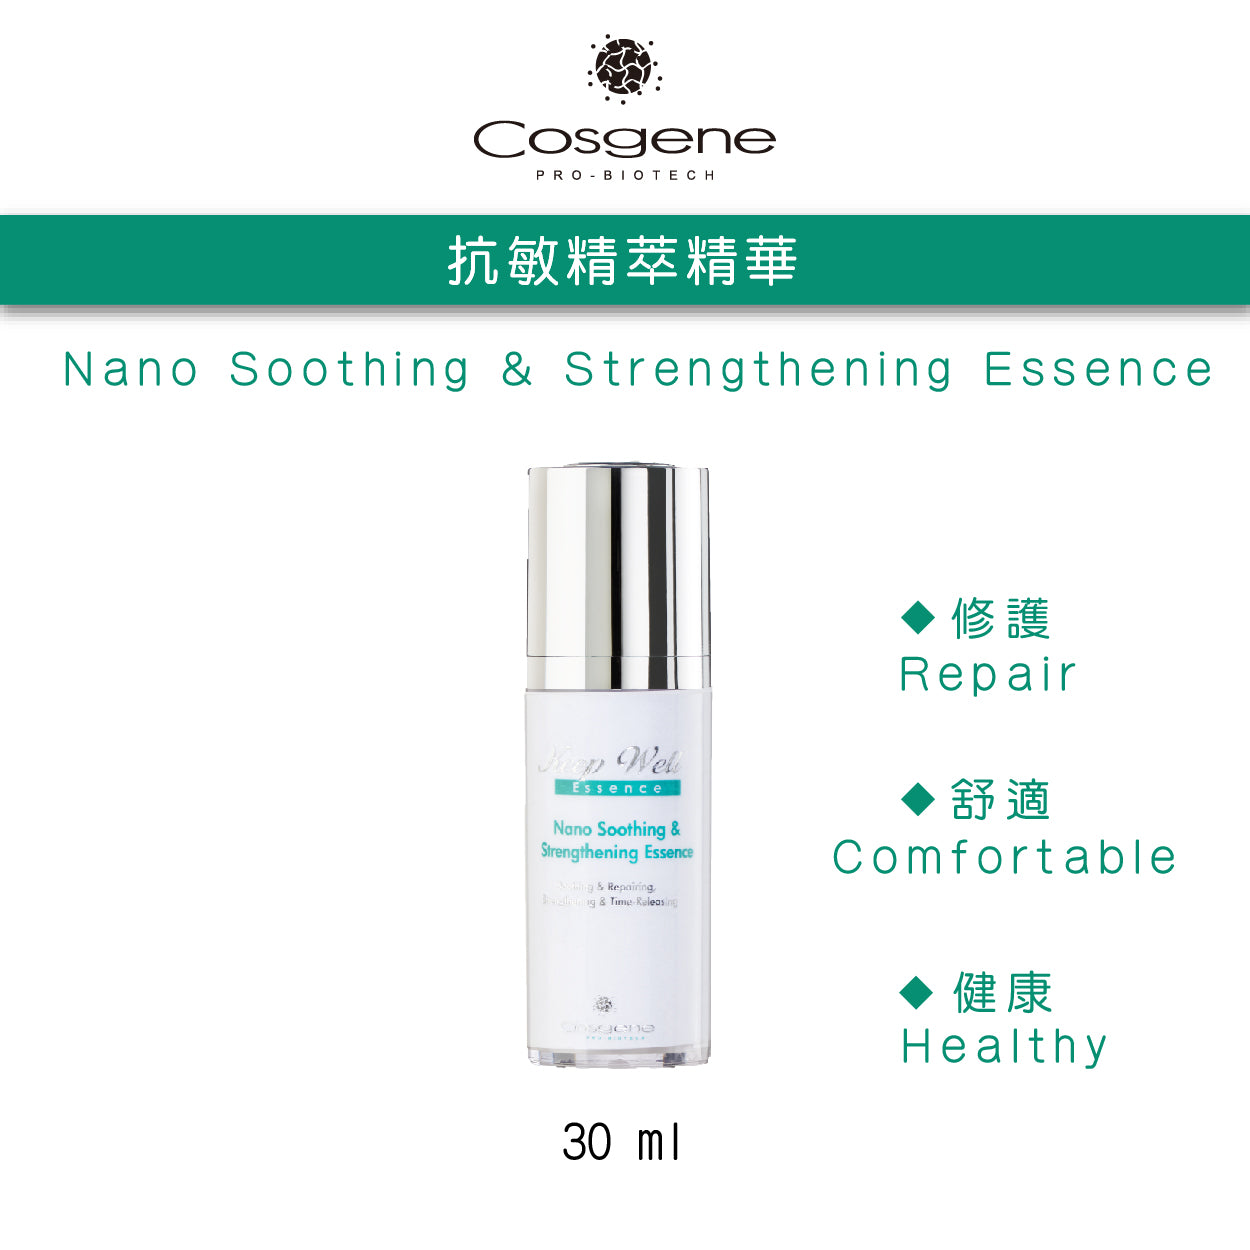 【COSGENE】Nano Soothing & Strengthening Essence